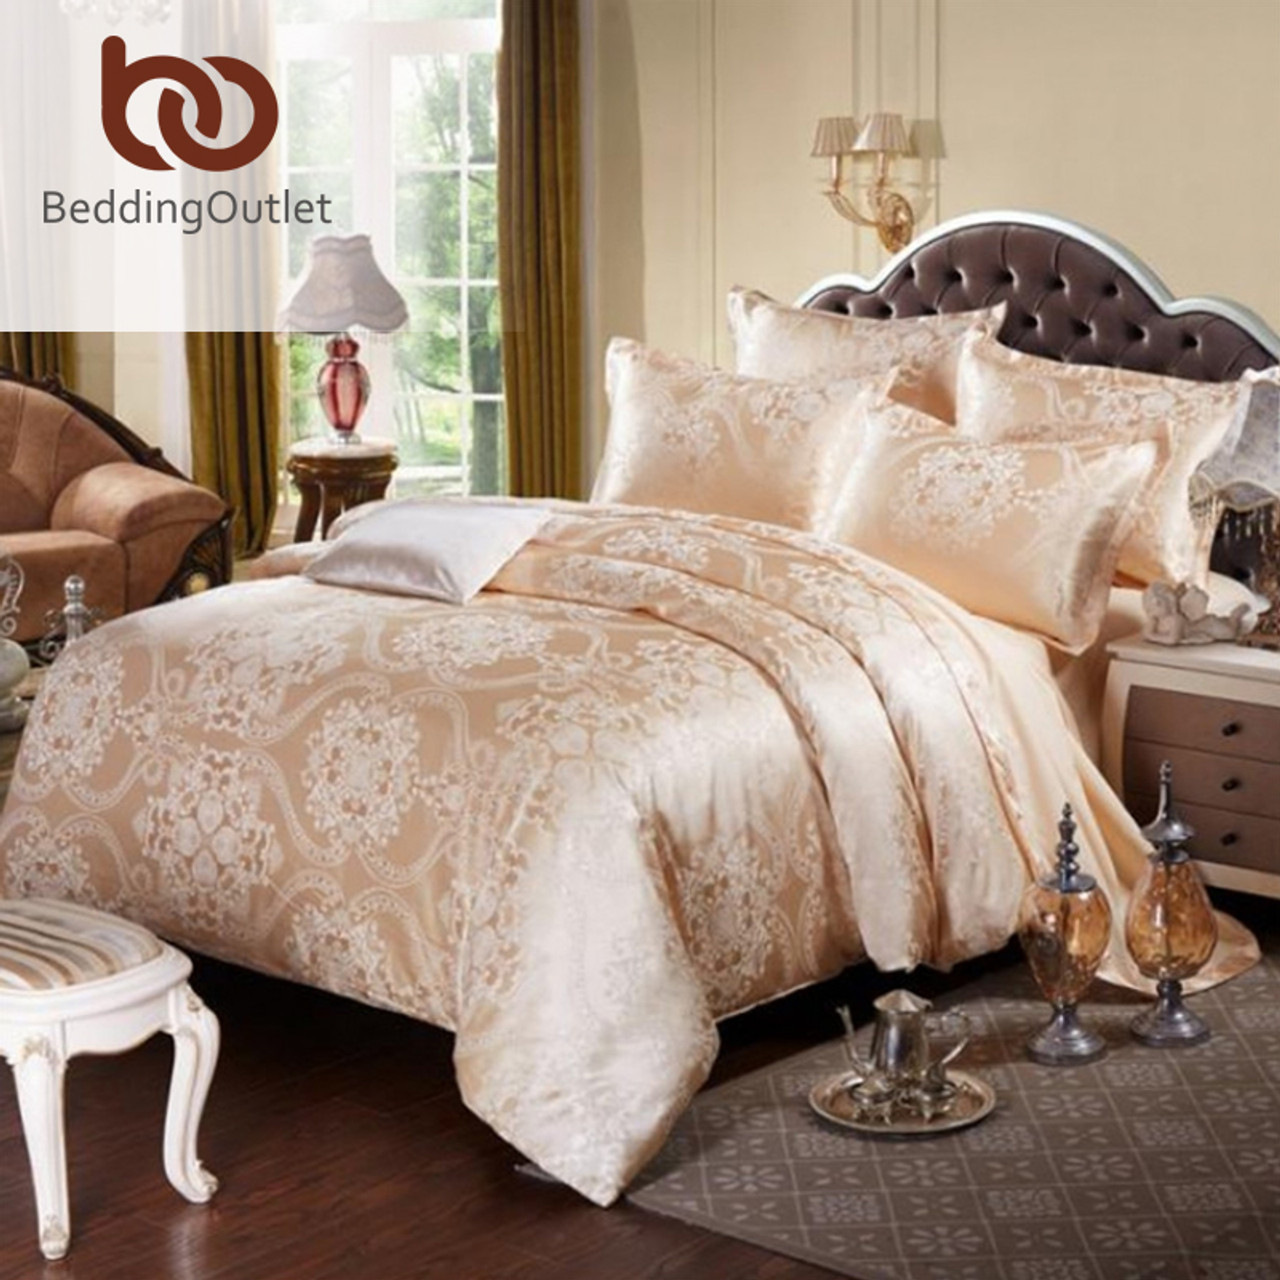 Beddingoutlet Gold Bedding Set Noble And Elegant Duvet Cover